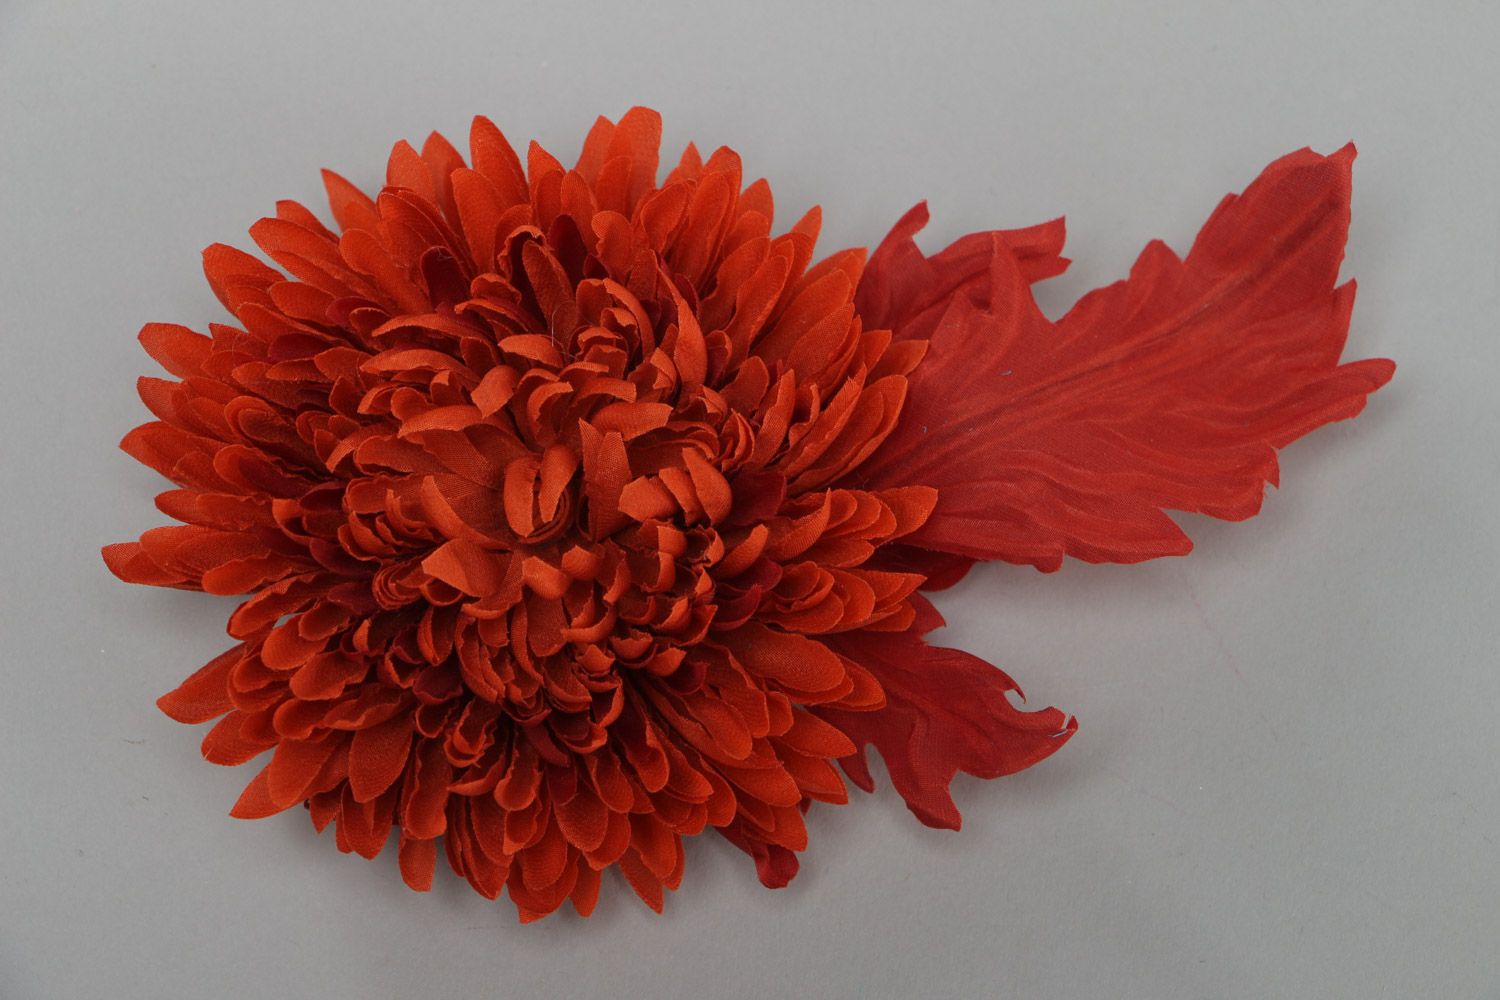 Брошь цветок из ткани красная яркая большая красивая оригинальная ручной работы фото 2